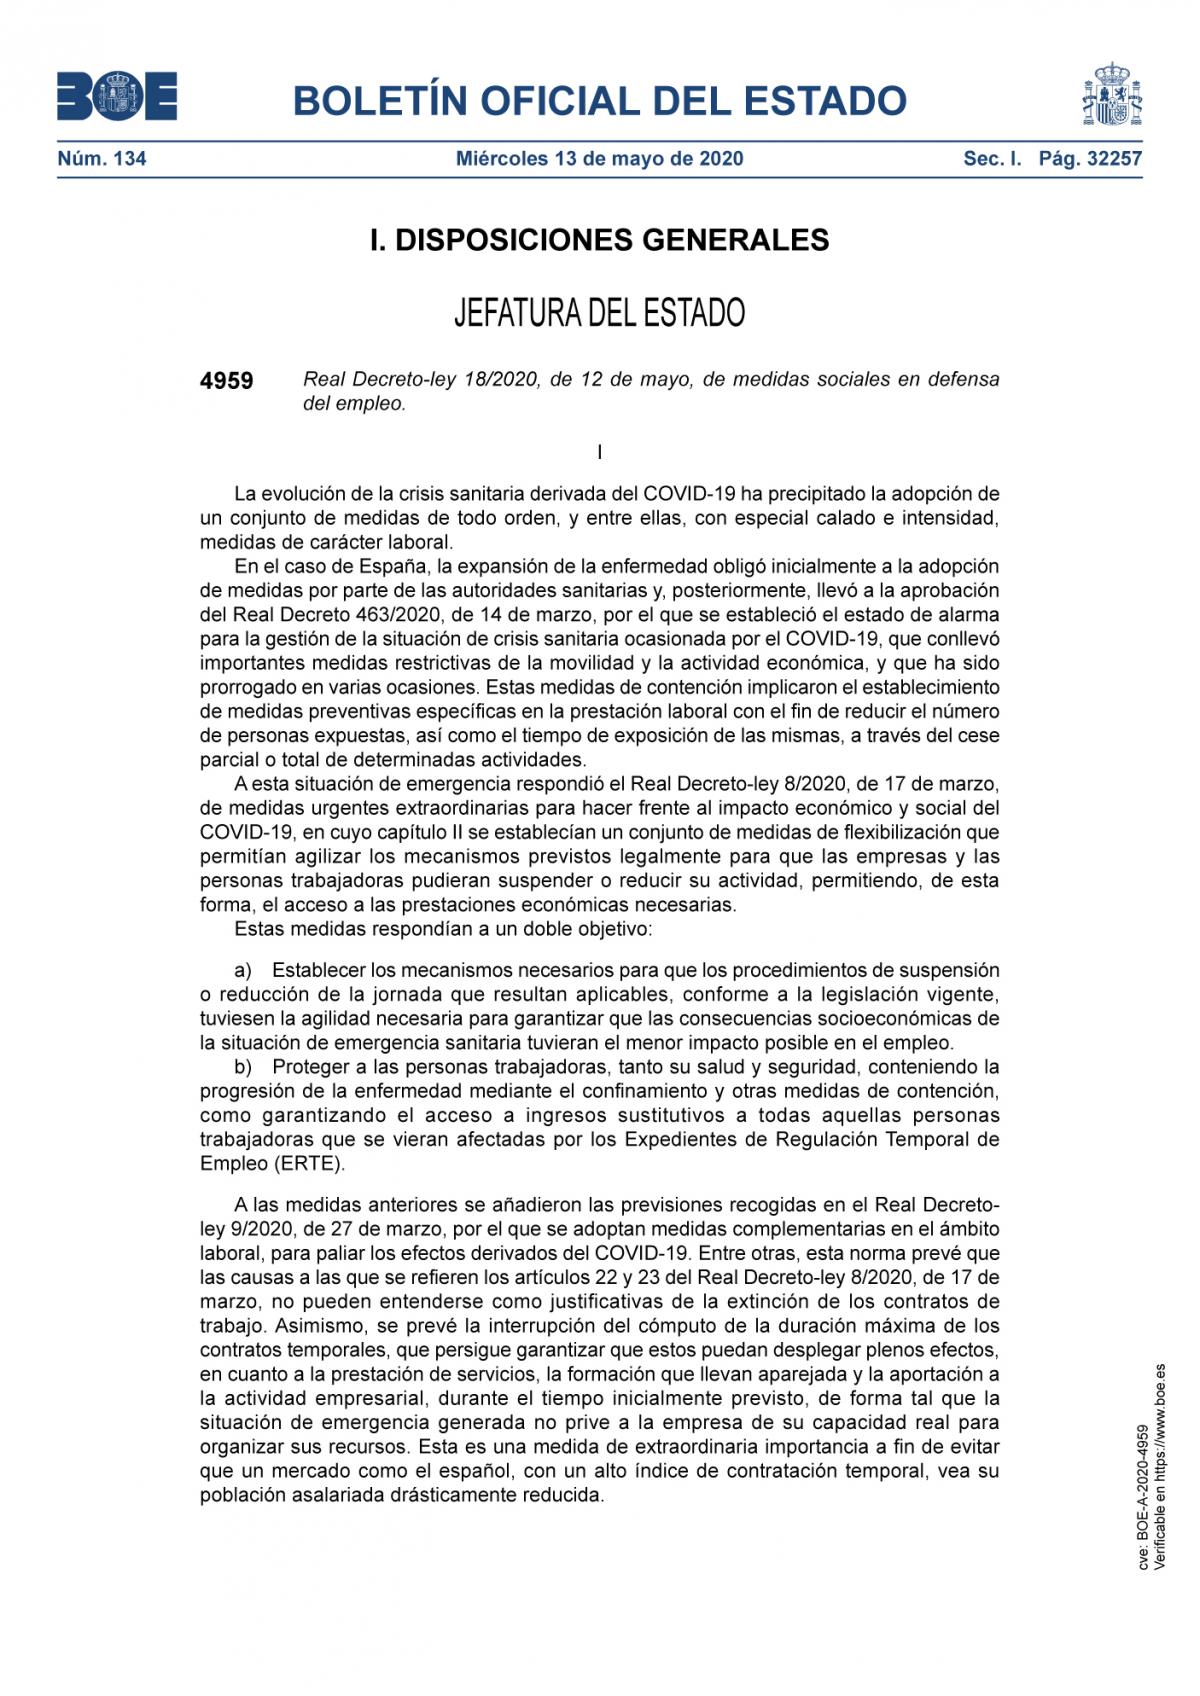 Real Decreto-ley 18/2020, de 12 de mayo, de medidas sociales en defensa del empleo.